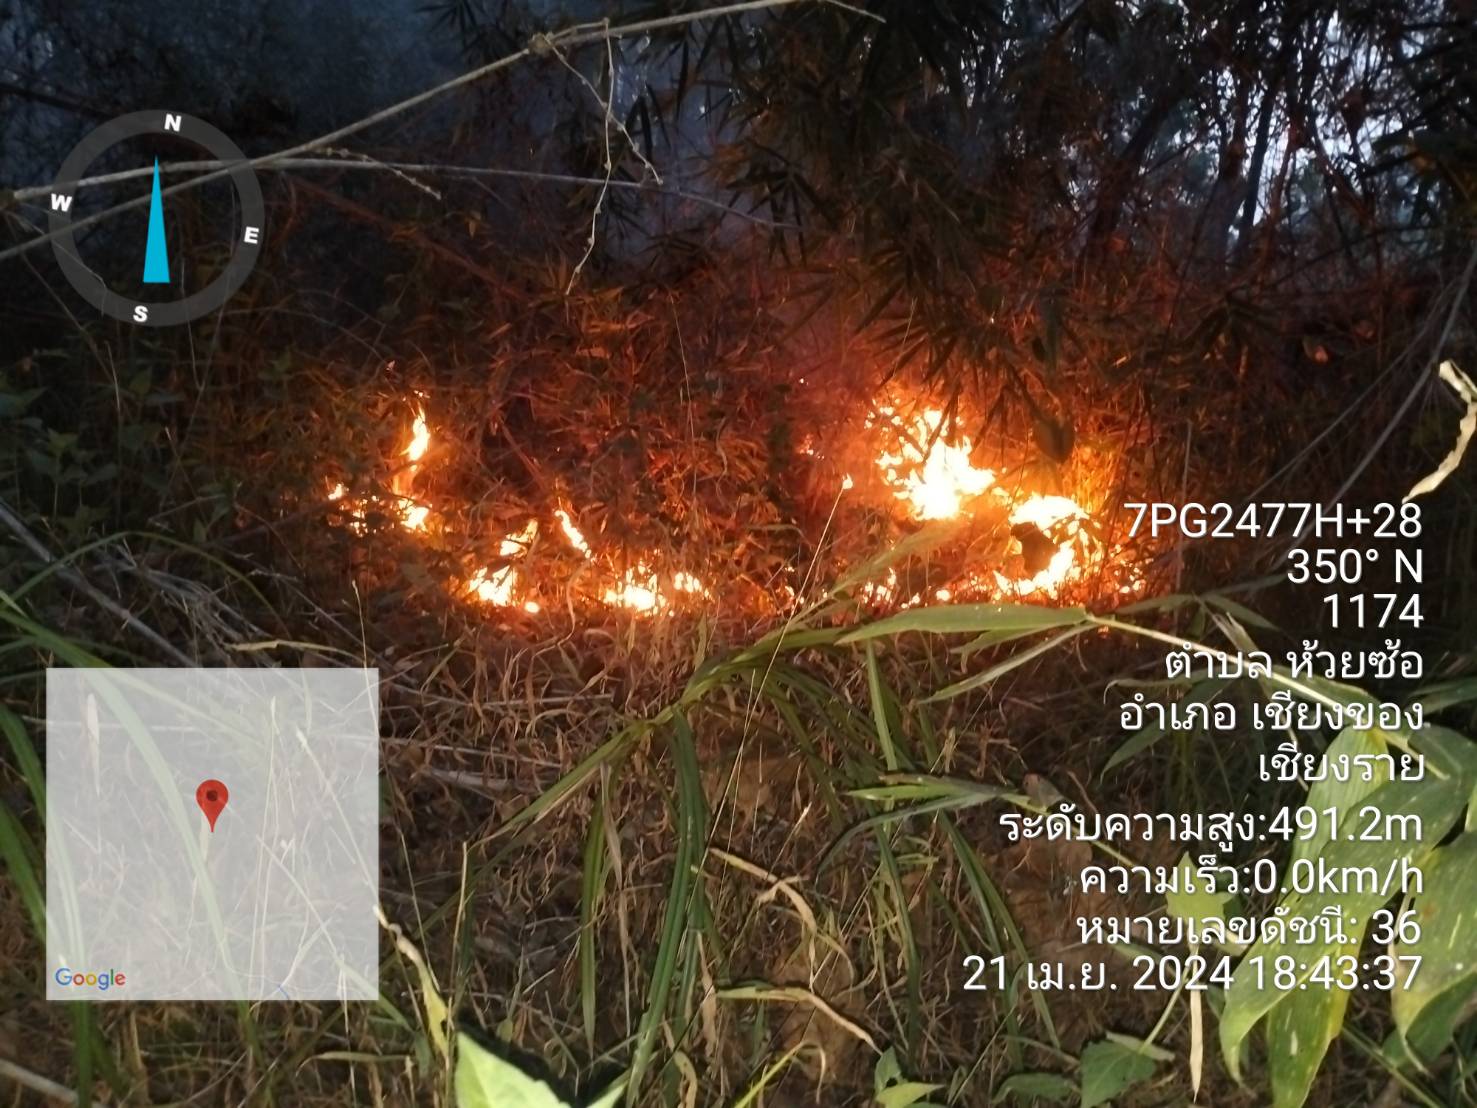 ฝ่ายปกครองอำเภอเชียงของ ปฏิบัติการลาดตระเวนป้องกันไฟป่าหลังพบจุดไฟลุกไหม้ในพื้นที่ตำบลห้วยซ้อ